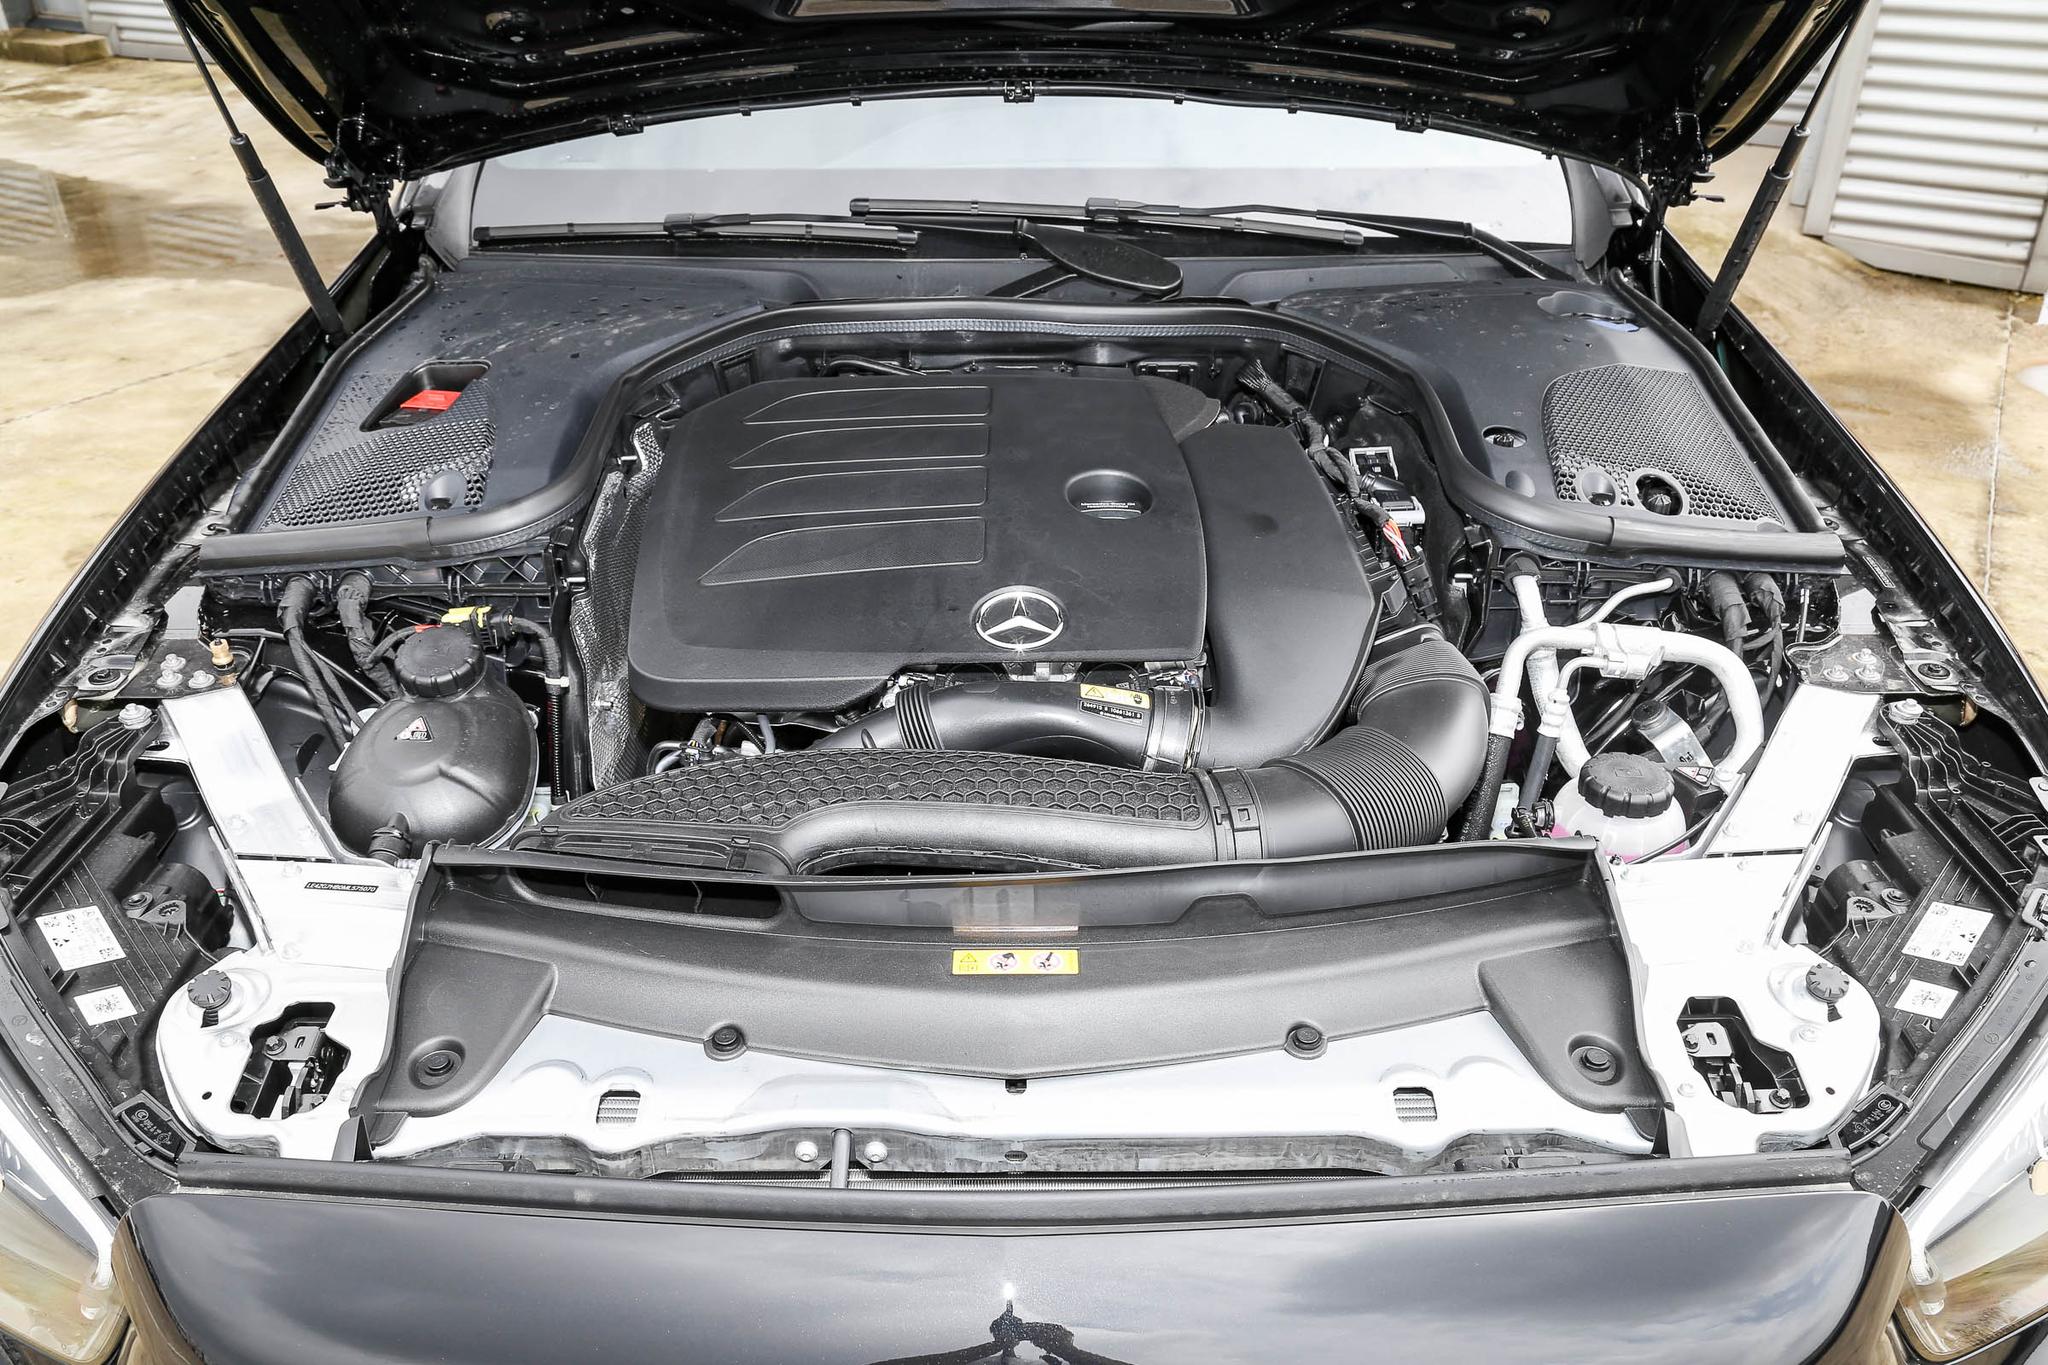 奔驰e级轿车发动机技术解析:加速劲道足,油耗经济